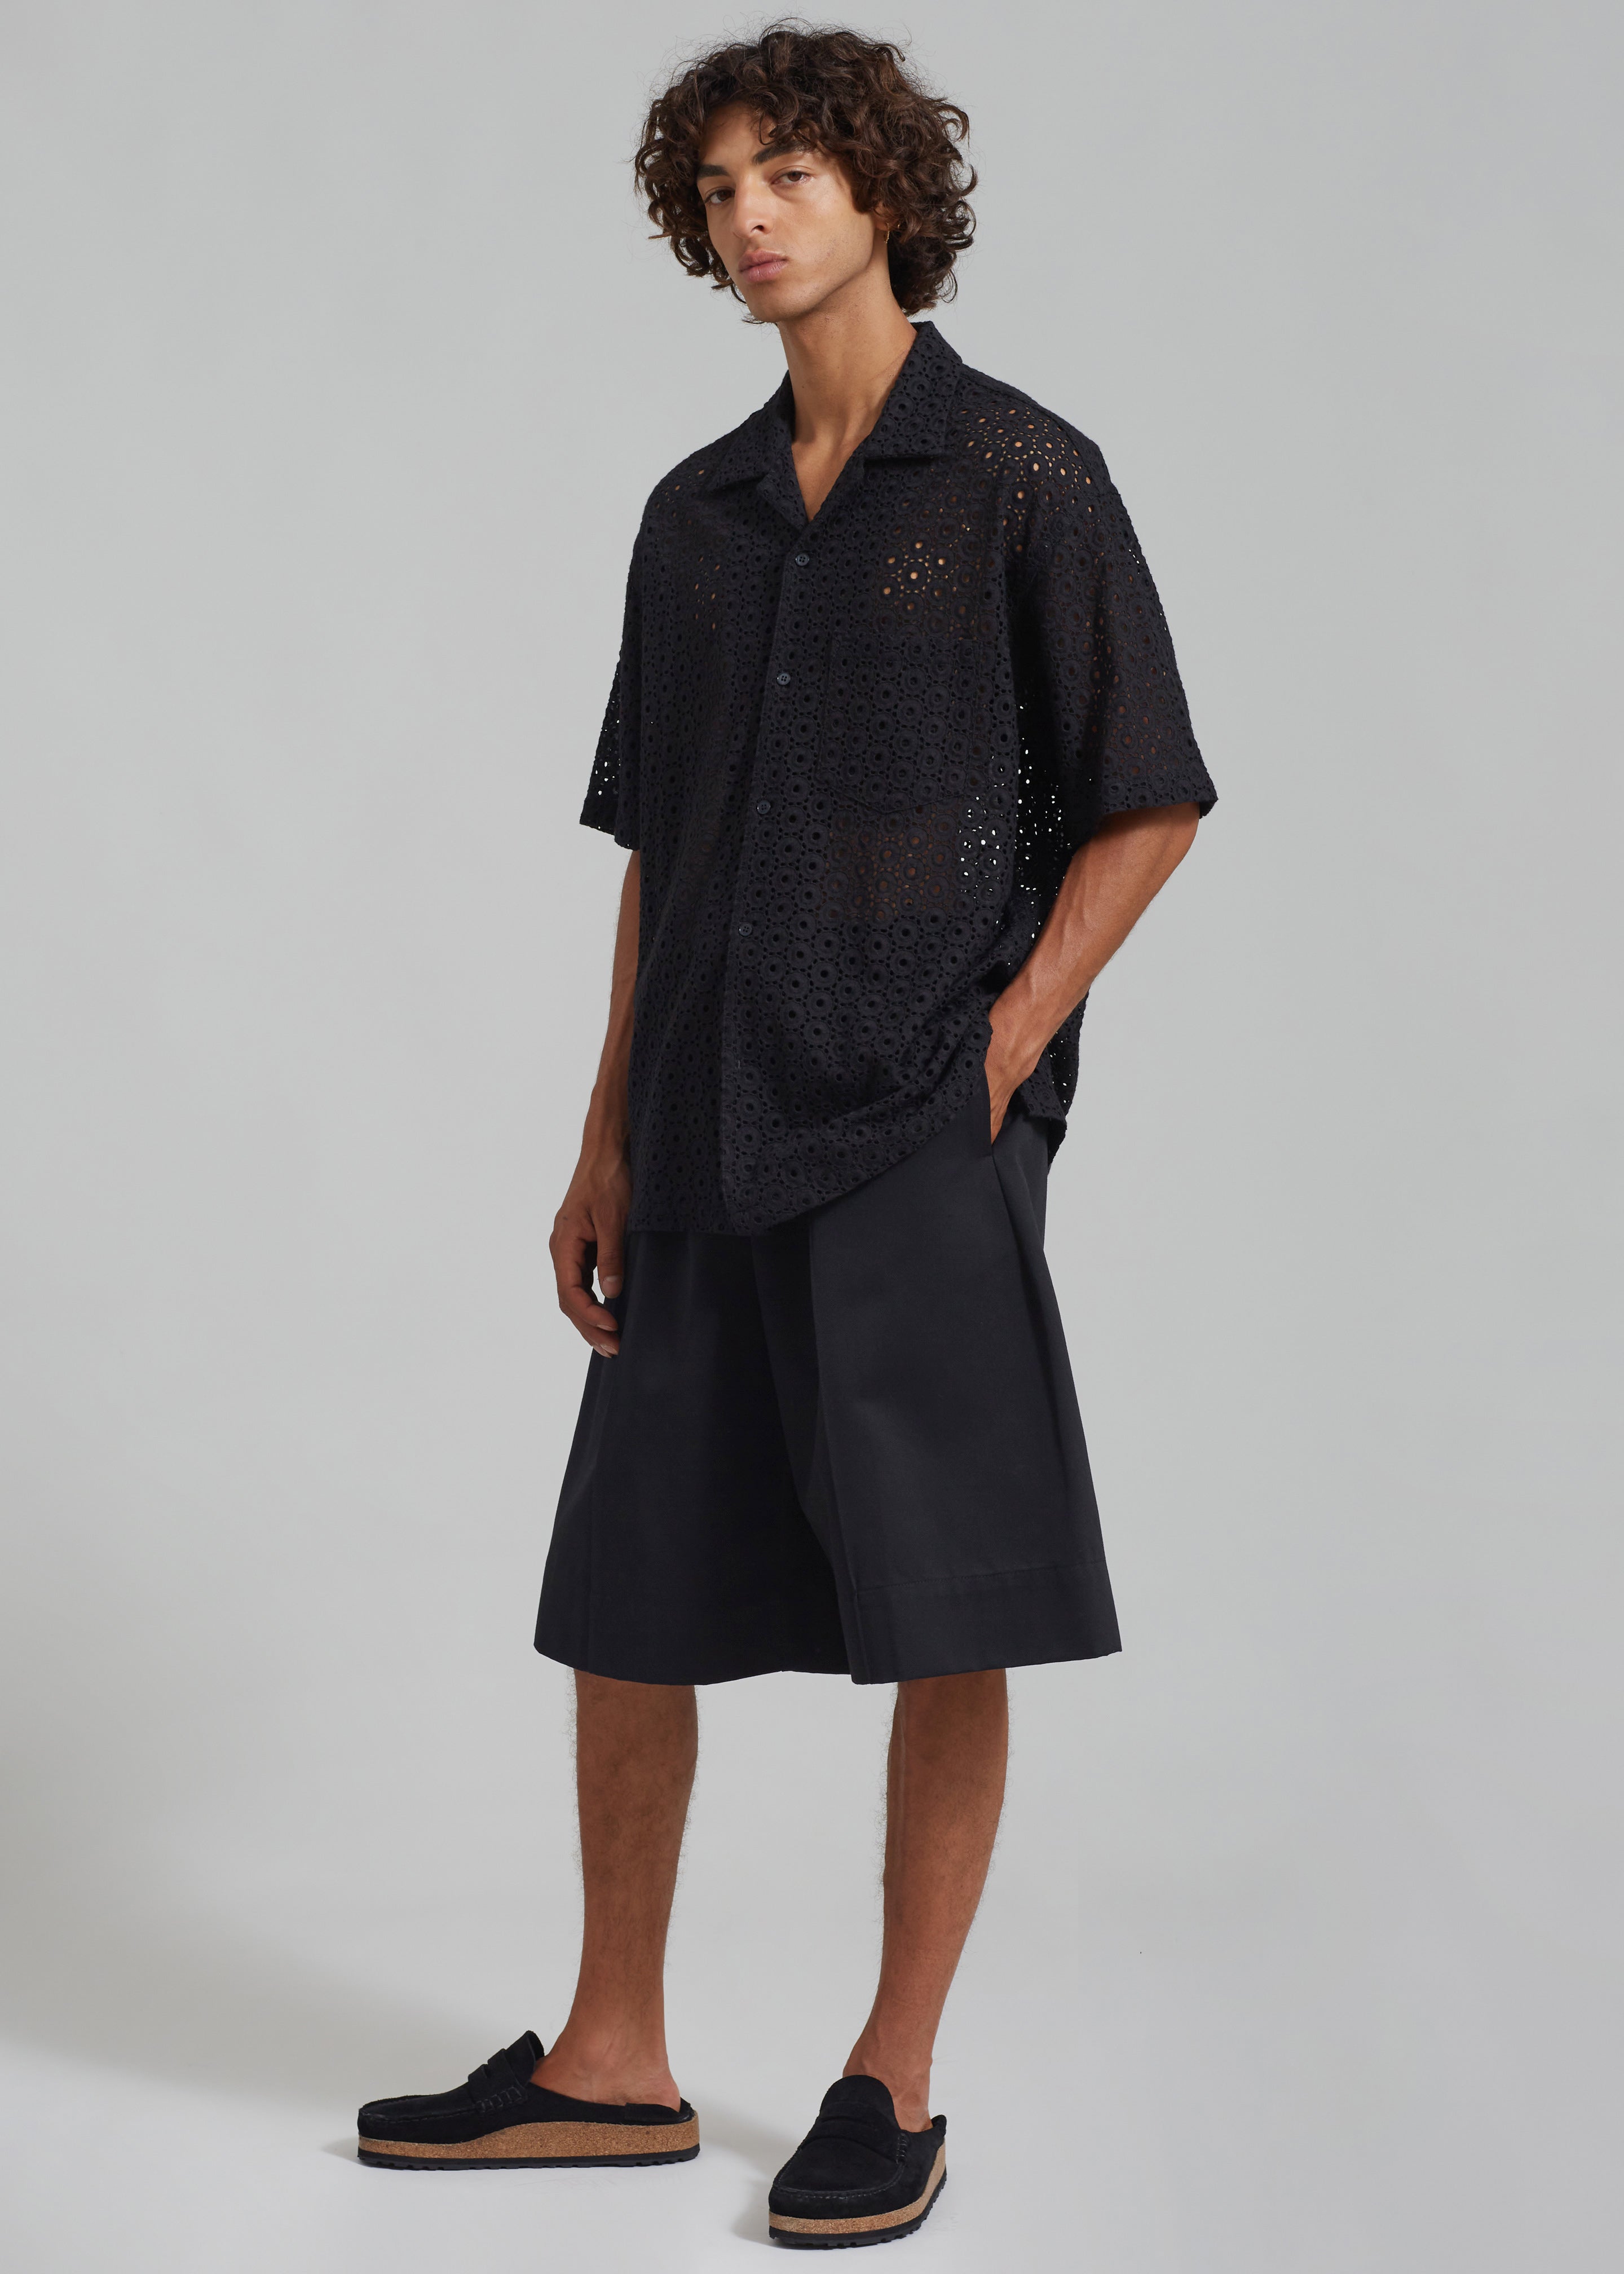 Adan Bermuda Shorts - Black - 8